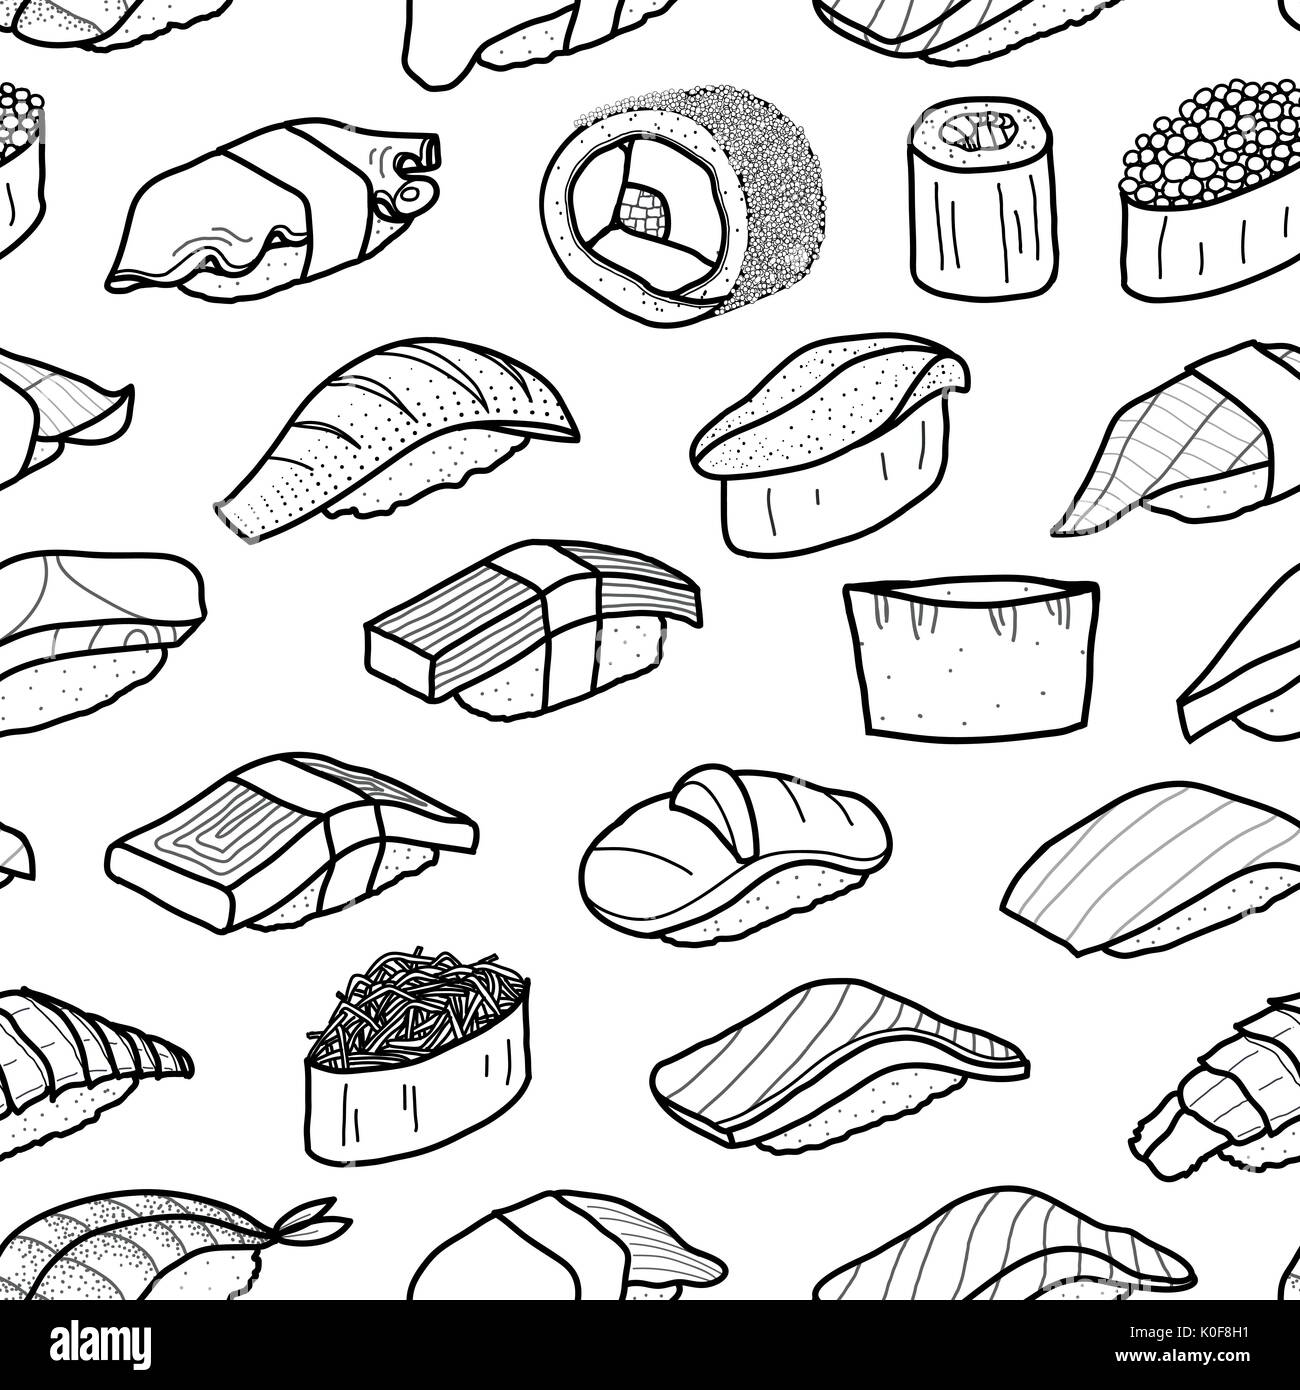 Viel Sushi in schwarzer Umriss random auf weißem Hintergrund. Nettes japanisches Essen Abbildung Hand gezeichneten Stil. nahtlose Muster. Stock Vektor